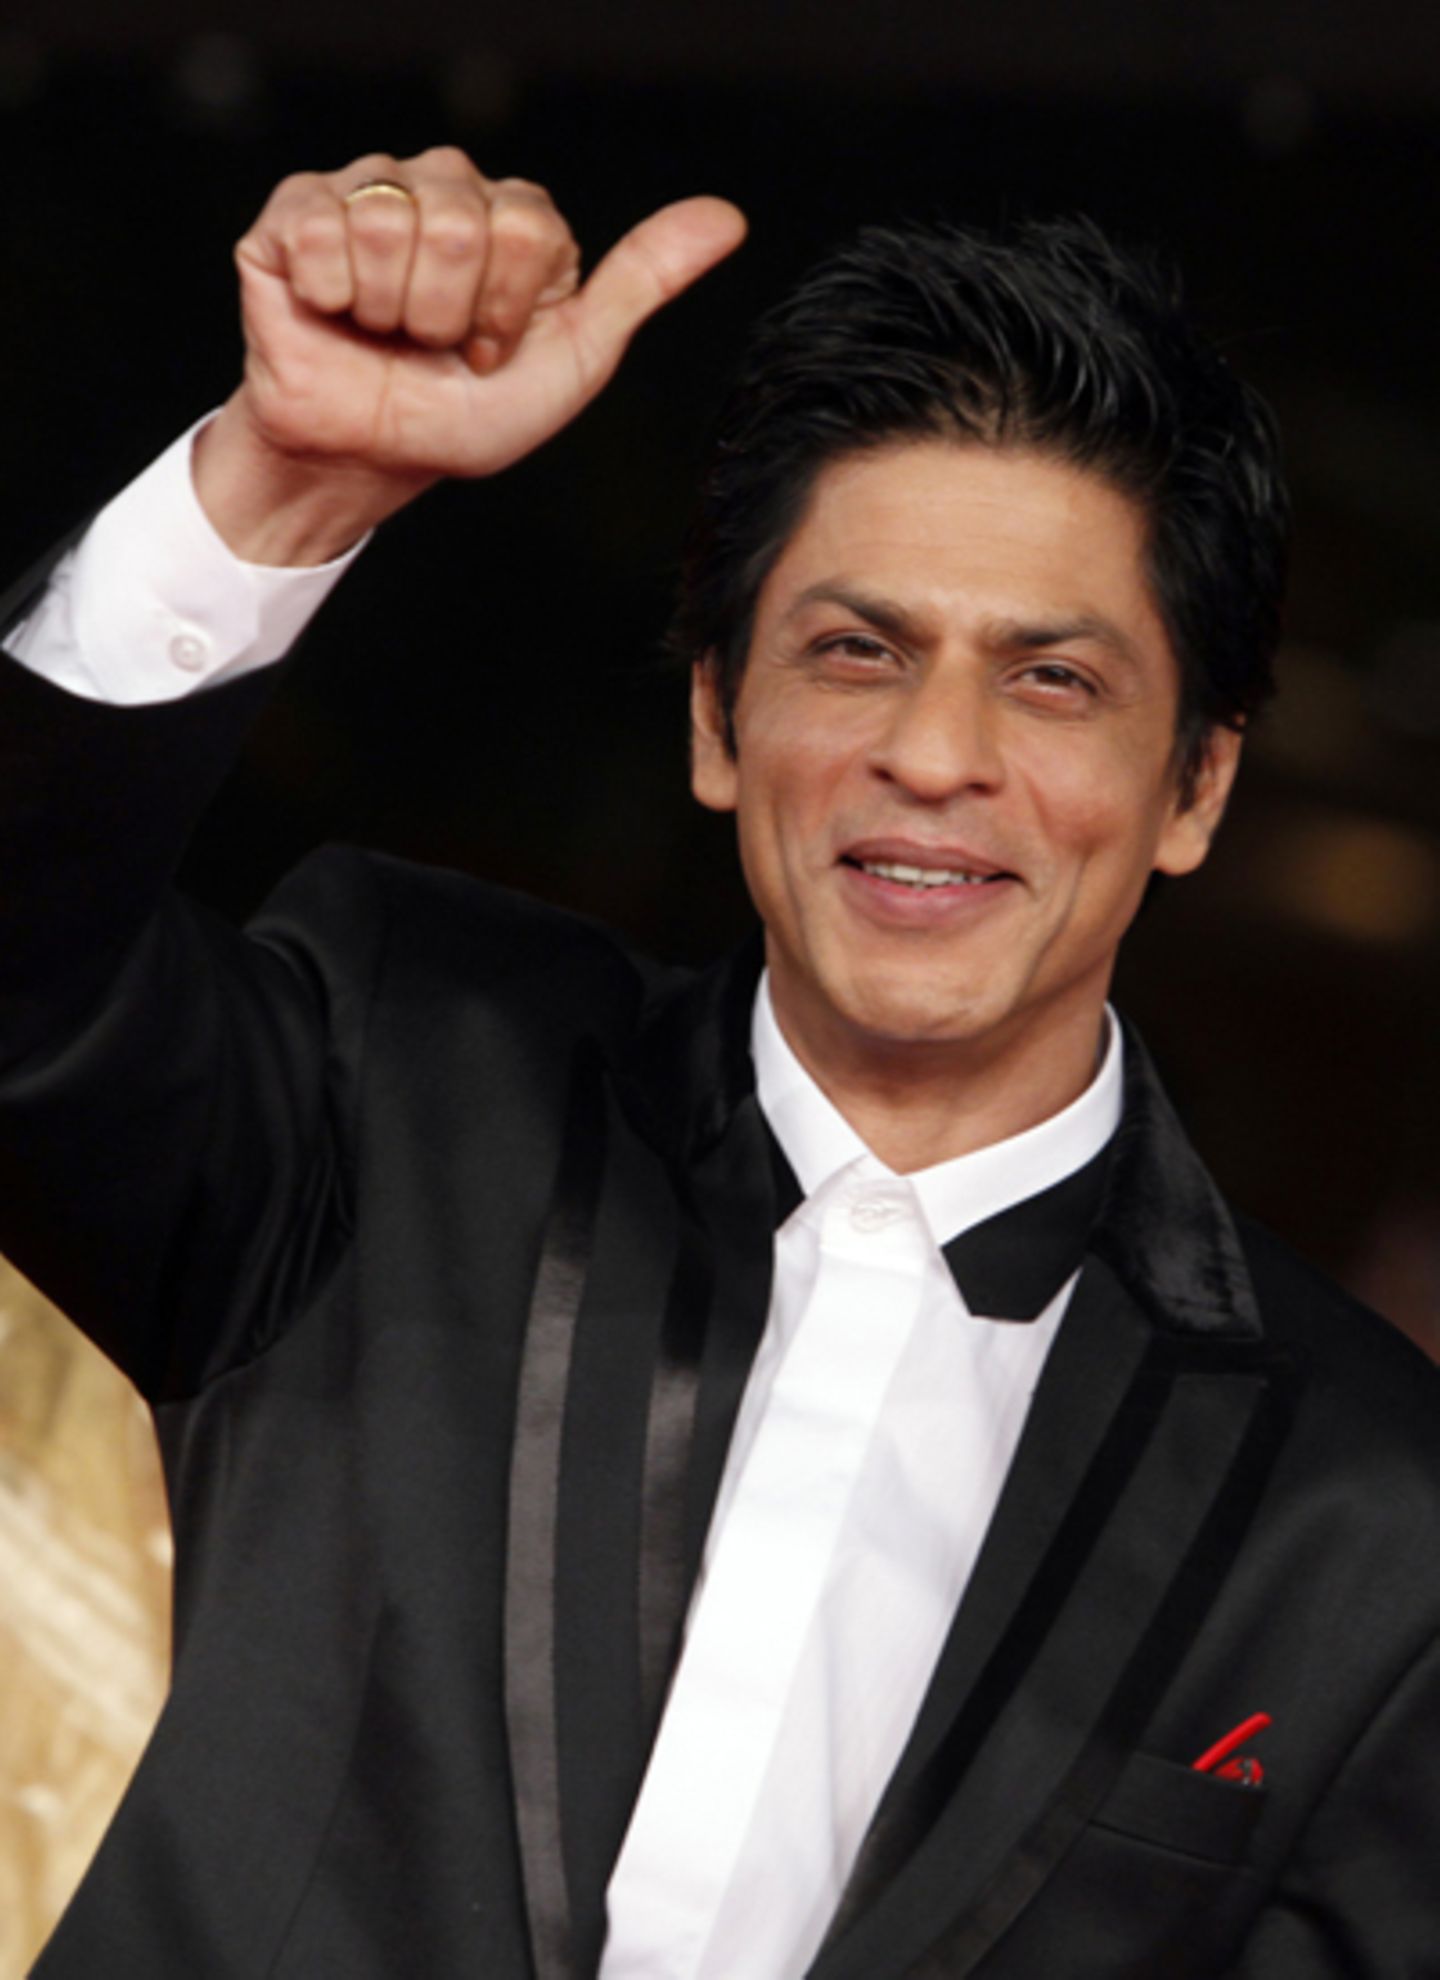 Daumen hoch! Shah Rukh Khan gefällt es auf der Premiere seines Films "My Name Is Khan".